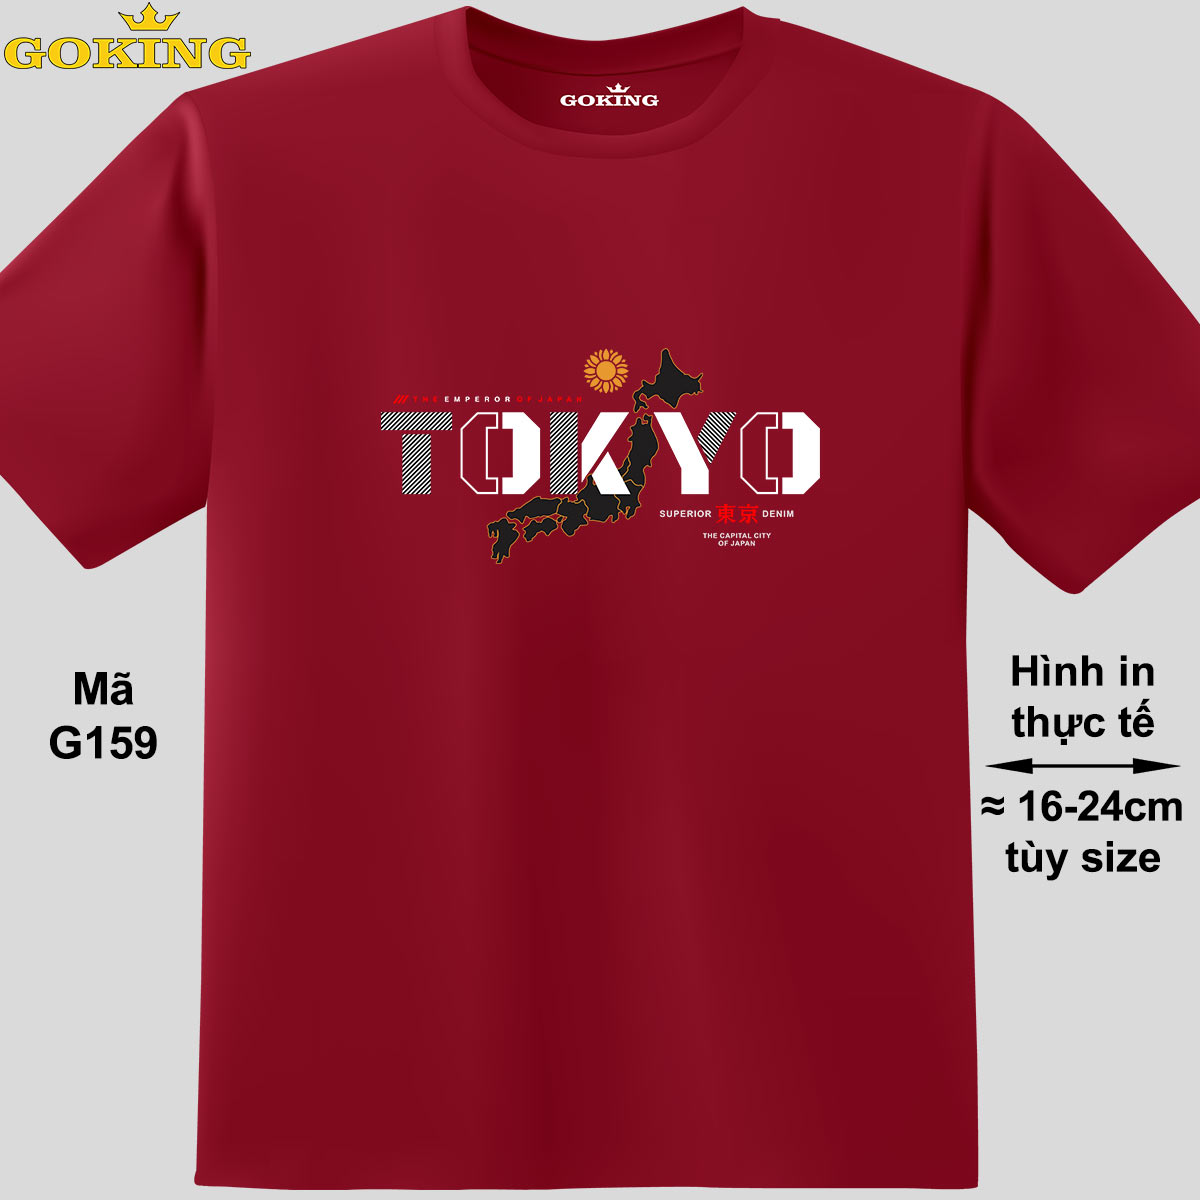 TOKYO, mã G159. Áo thun hàng hiệu GOKING, form unisex cho nam nữ, trẻ em, bé trai gái. Áo phông in hình chữ đẹp. Quà tặng cao cấp cho gia đình, cặp đôi, hội nhóm, doanh nghiệp